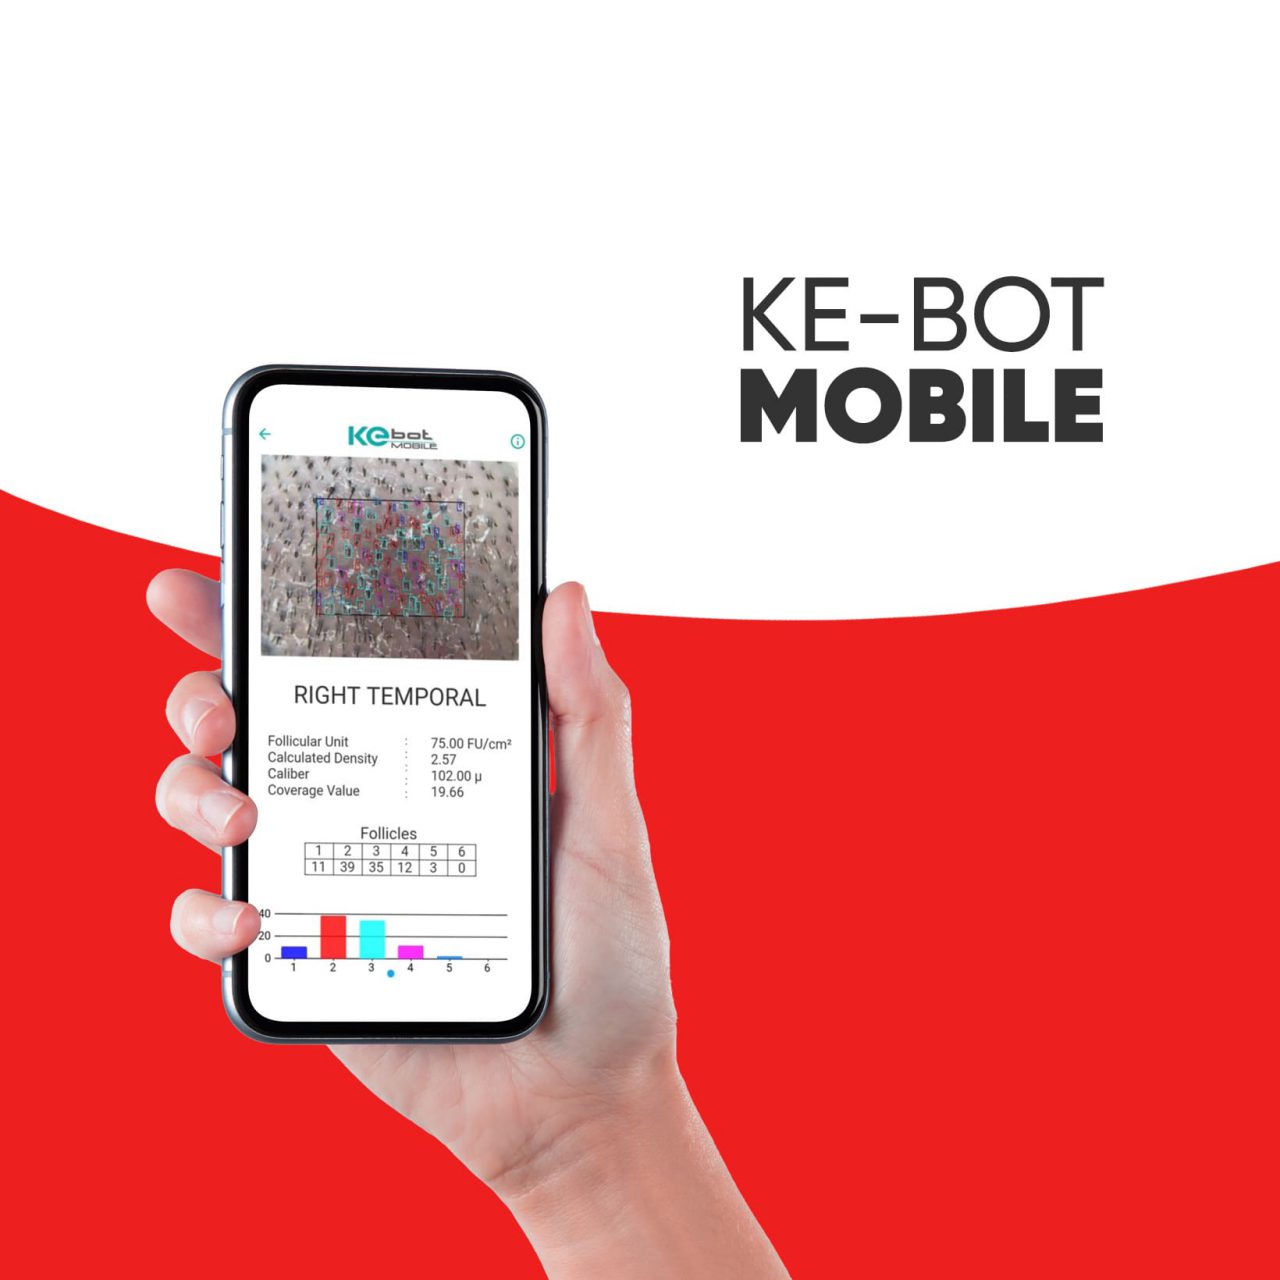 KEbot-mobile-1280x1280